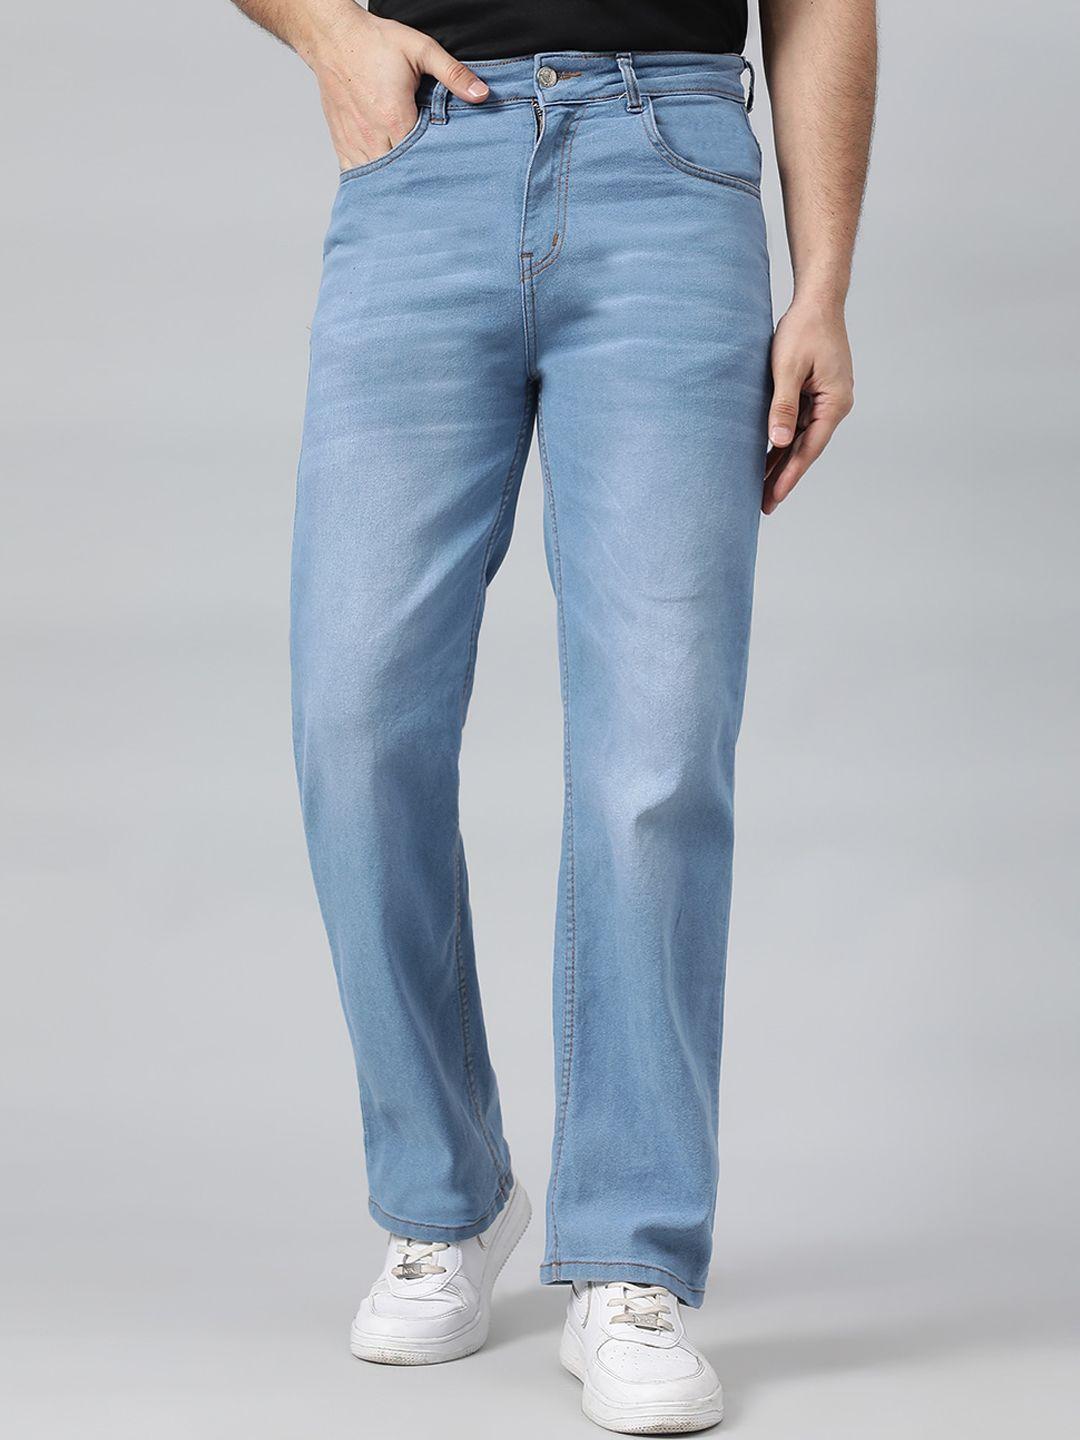 kotty men cotton jean low-rise stretchable jeans